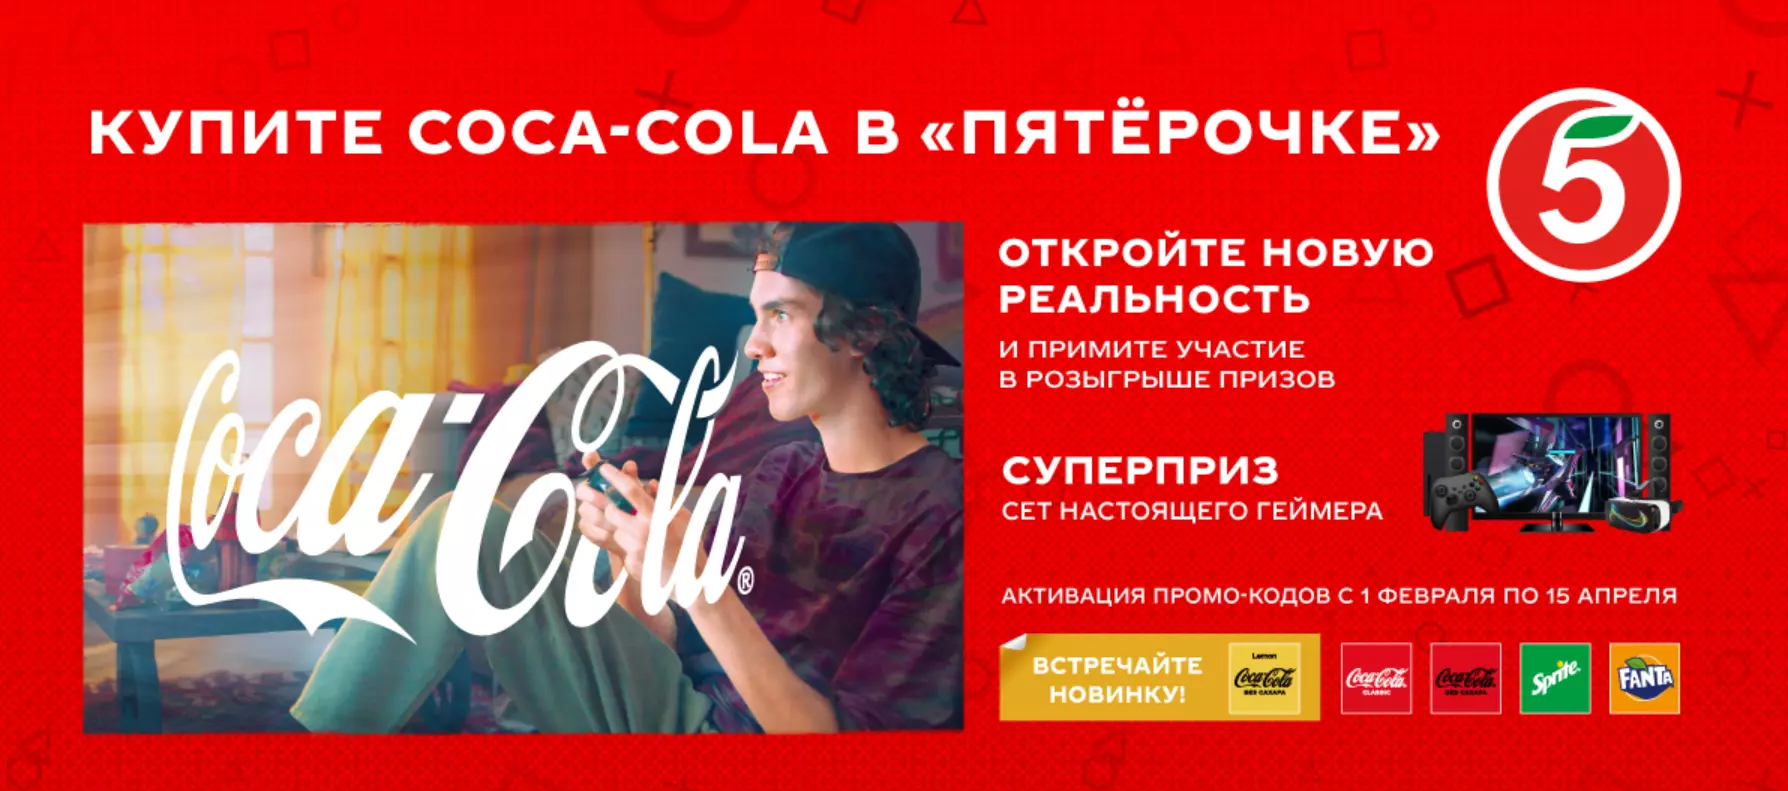 Акция Coca-Cola, Fanta, Sprite и Пятерочка: «Купите Coca-Cola и откройте новую реальность»